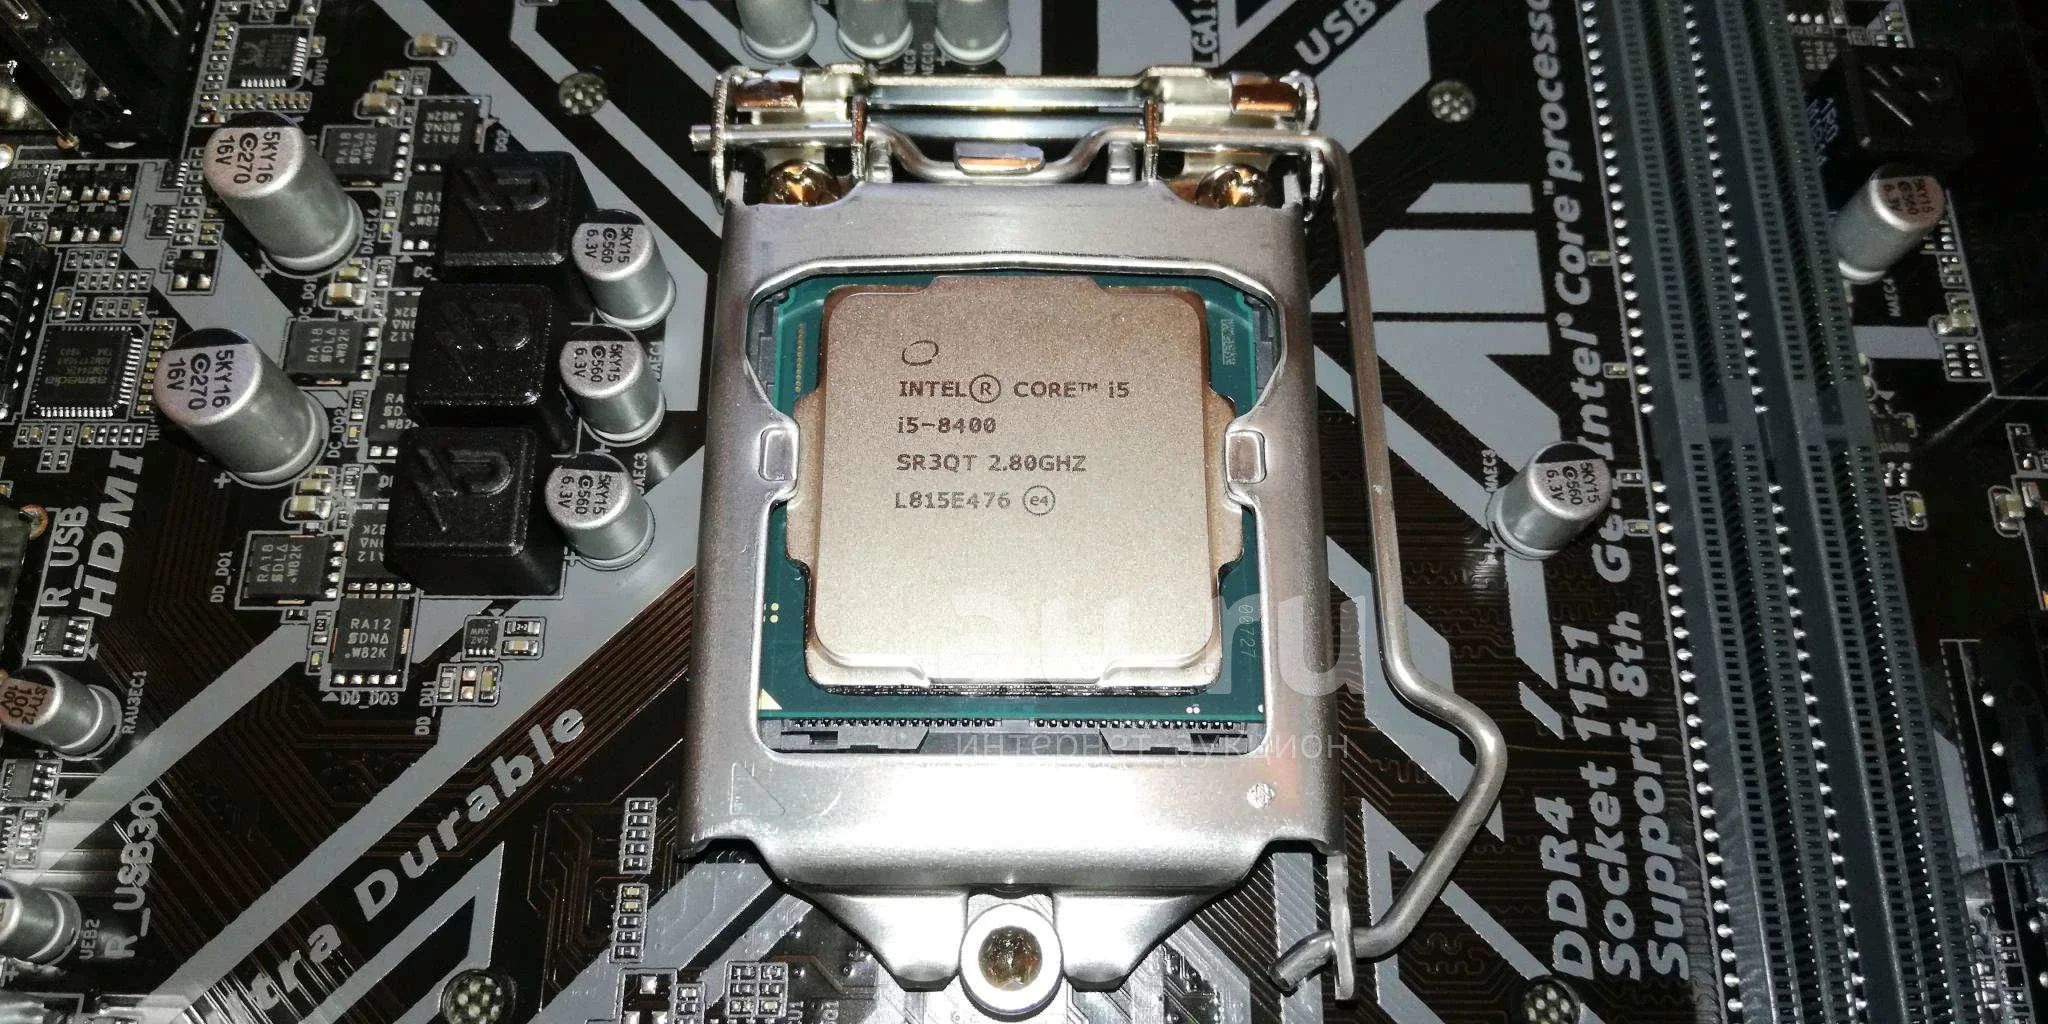 Интел коре i5 8400. Intel Core i5-8400. Процессор Intel Core i5 8400, LGA 1151v2 OEM. LGA 1151-v2 Core i5. Intel Core i5 8400 сокет.